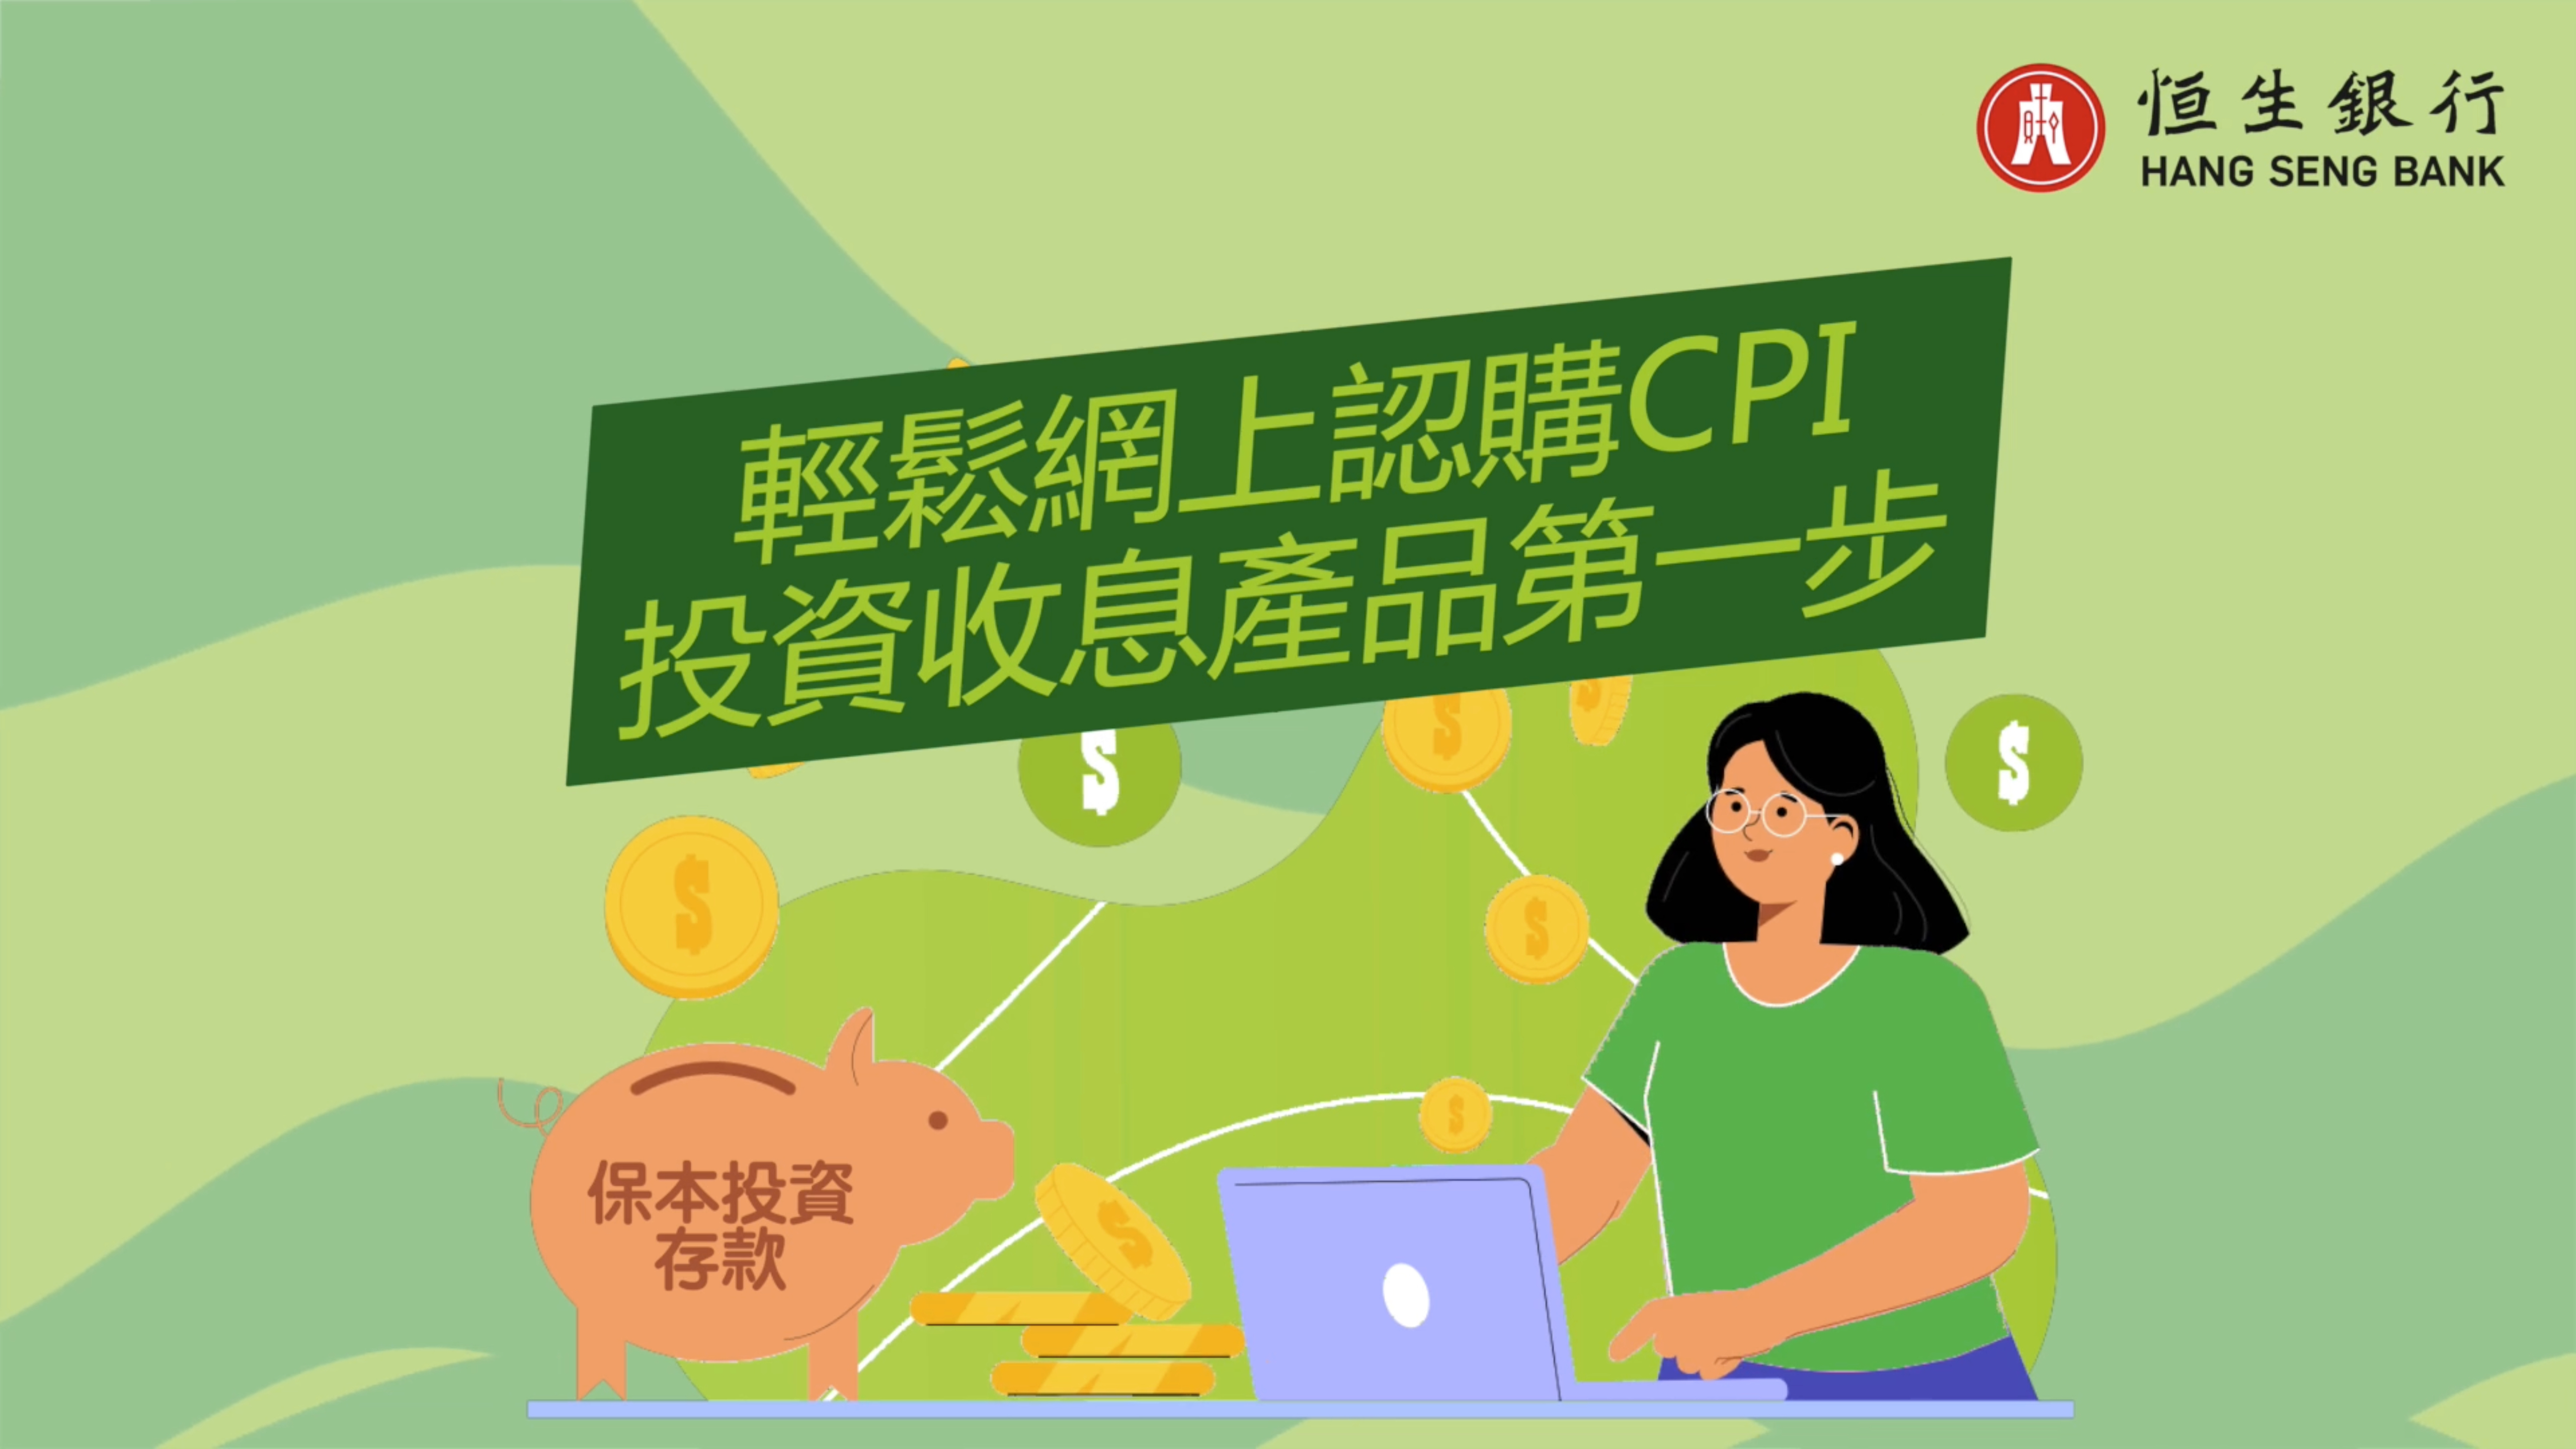 轻松网上认购CPI  投资收息产品第一步 (广东话版本)